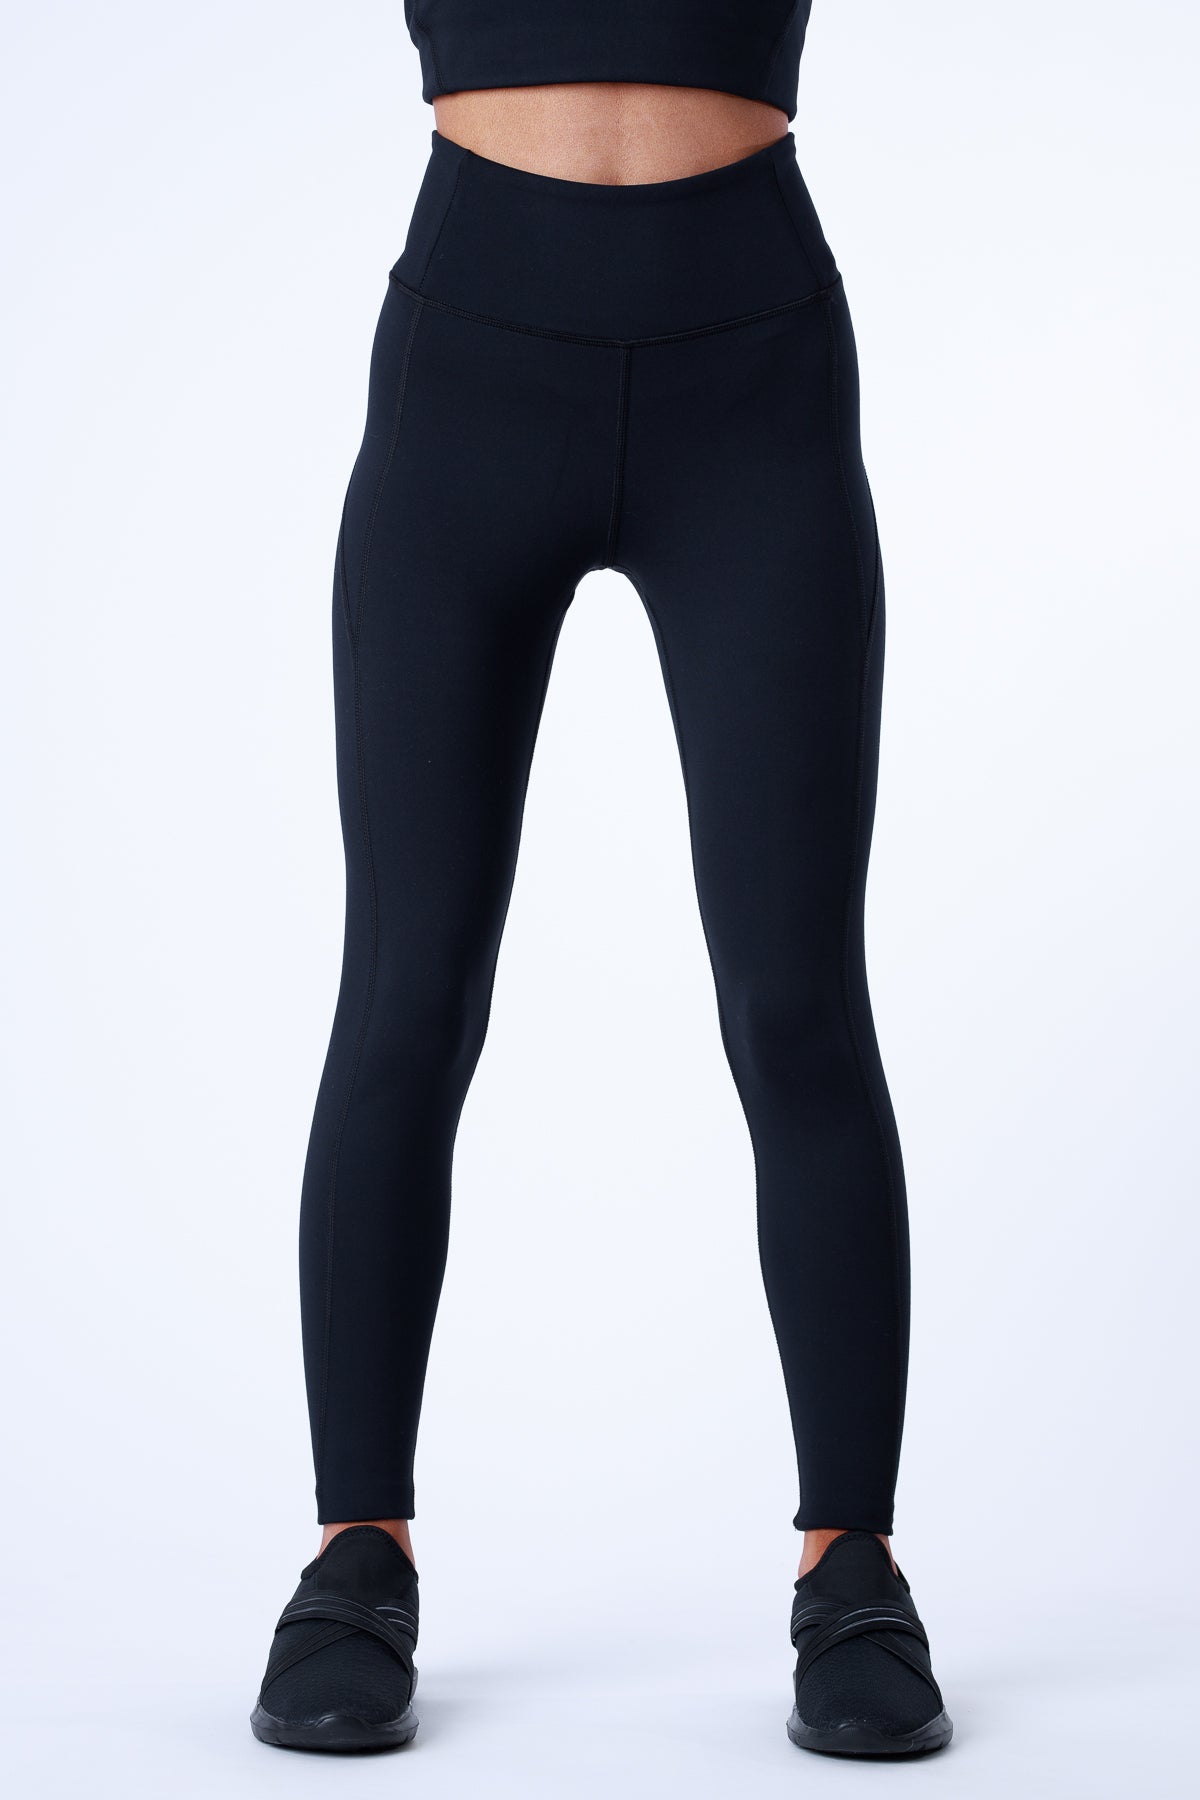 🌹2/$5 - black leggings  Black leggings, Solid black leggings, Leggings